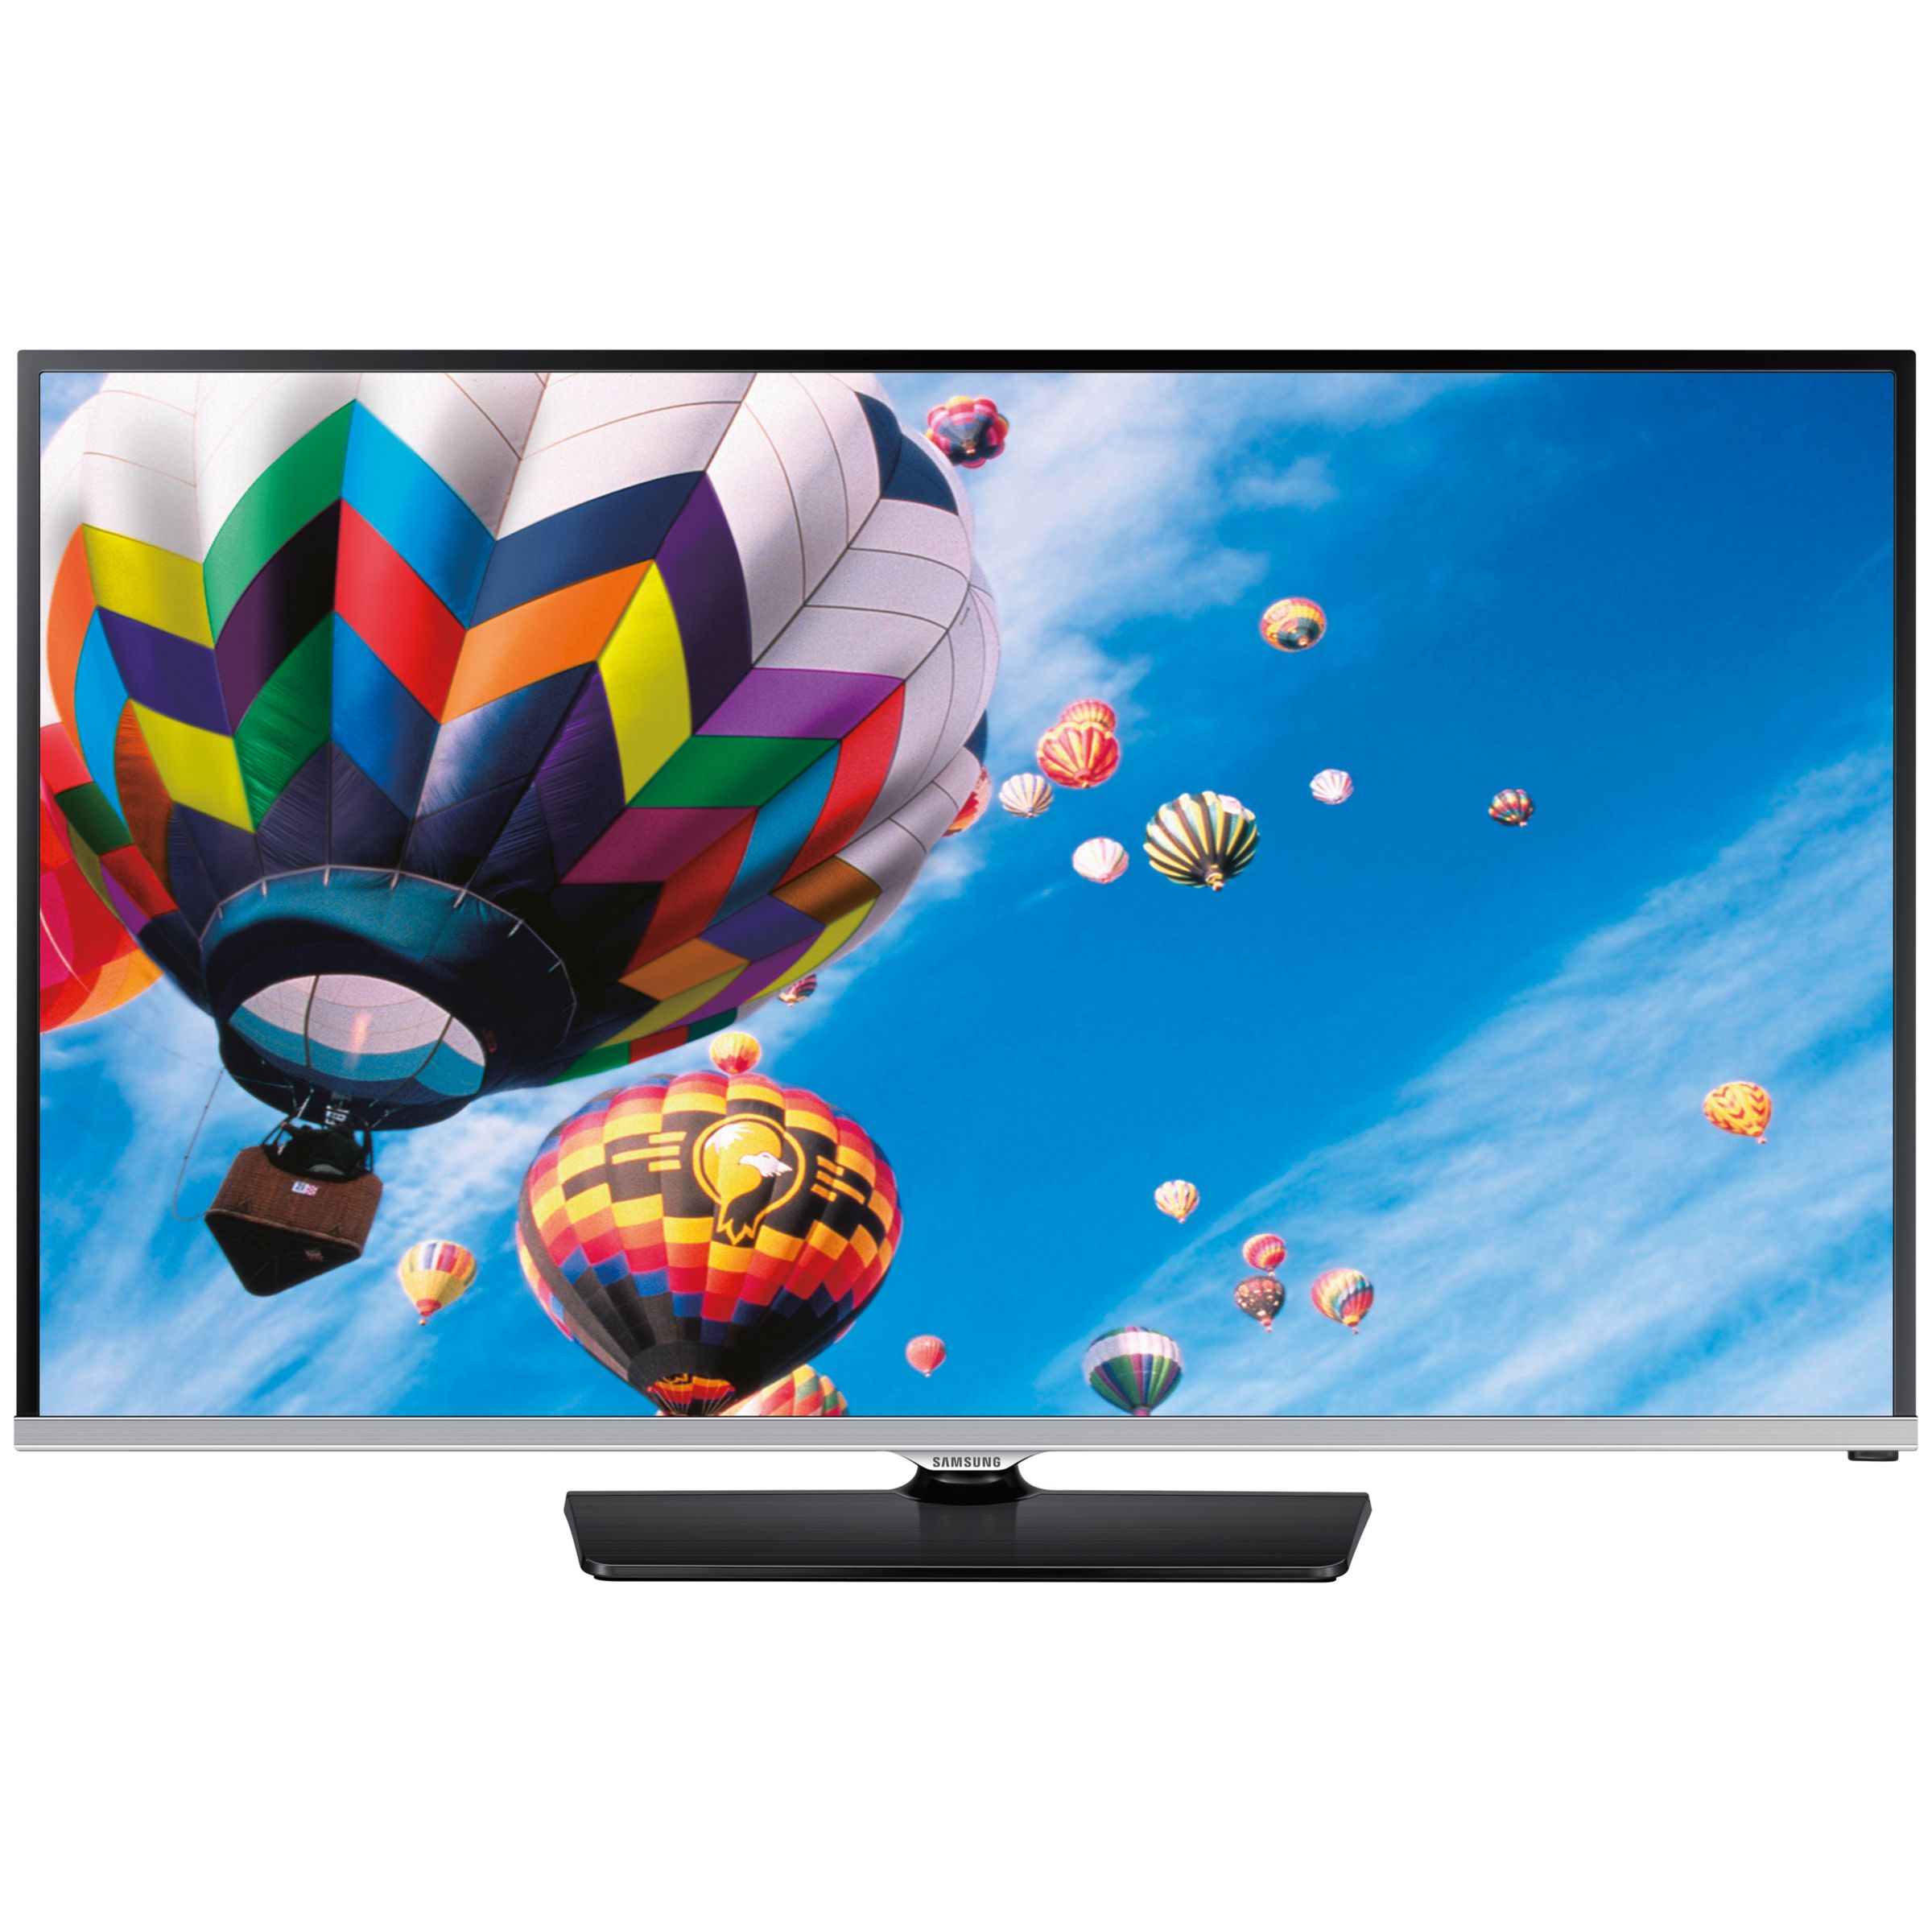 Samsung UE40H5000 LED HD 1080p TV, HD